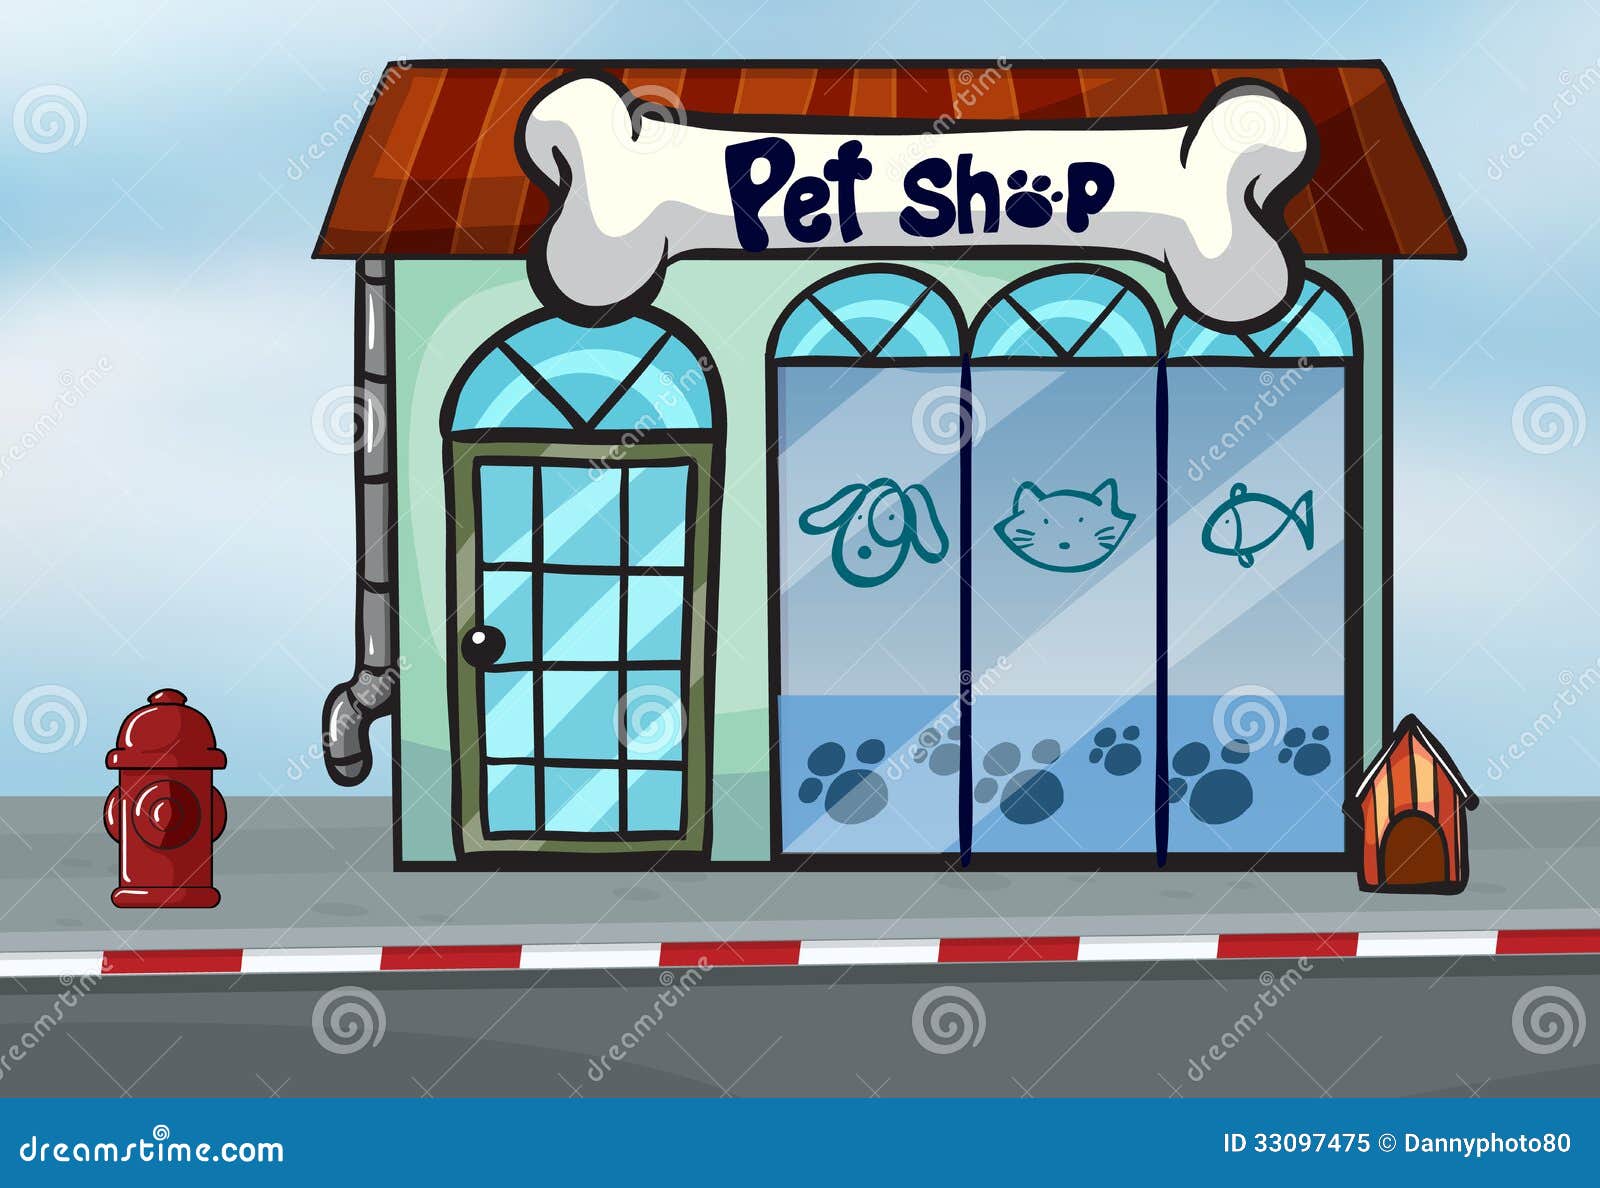 pet shop clip art free - photo #6